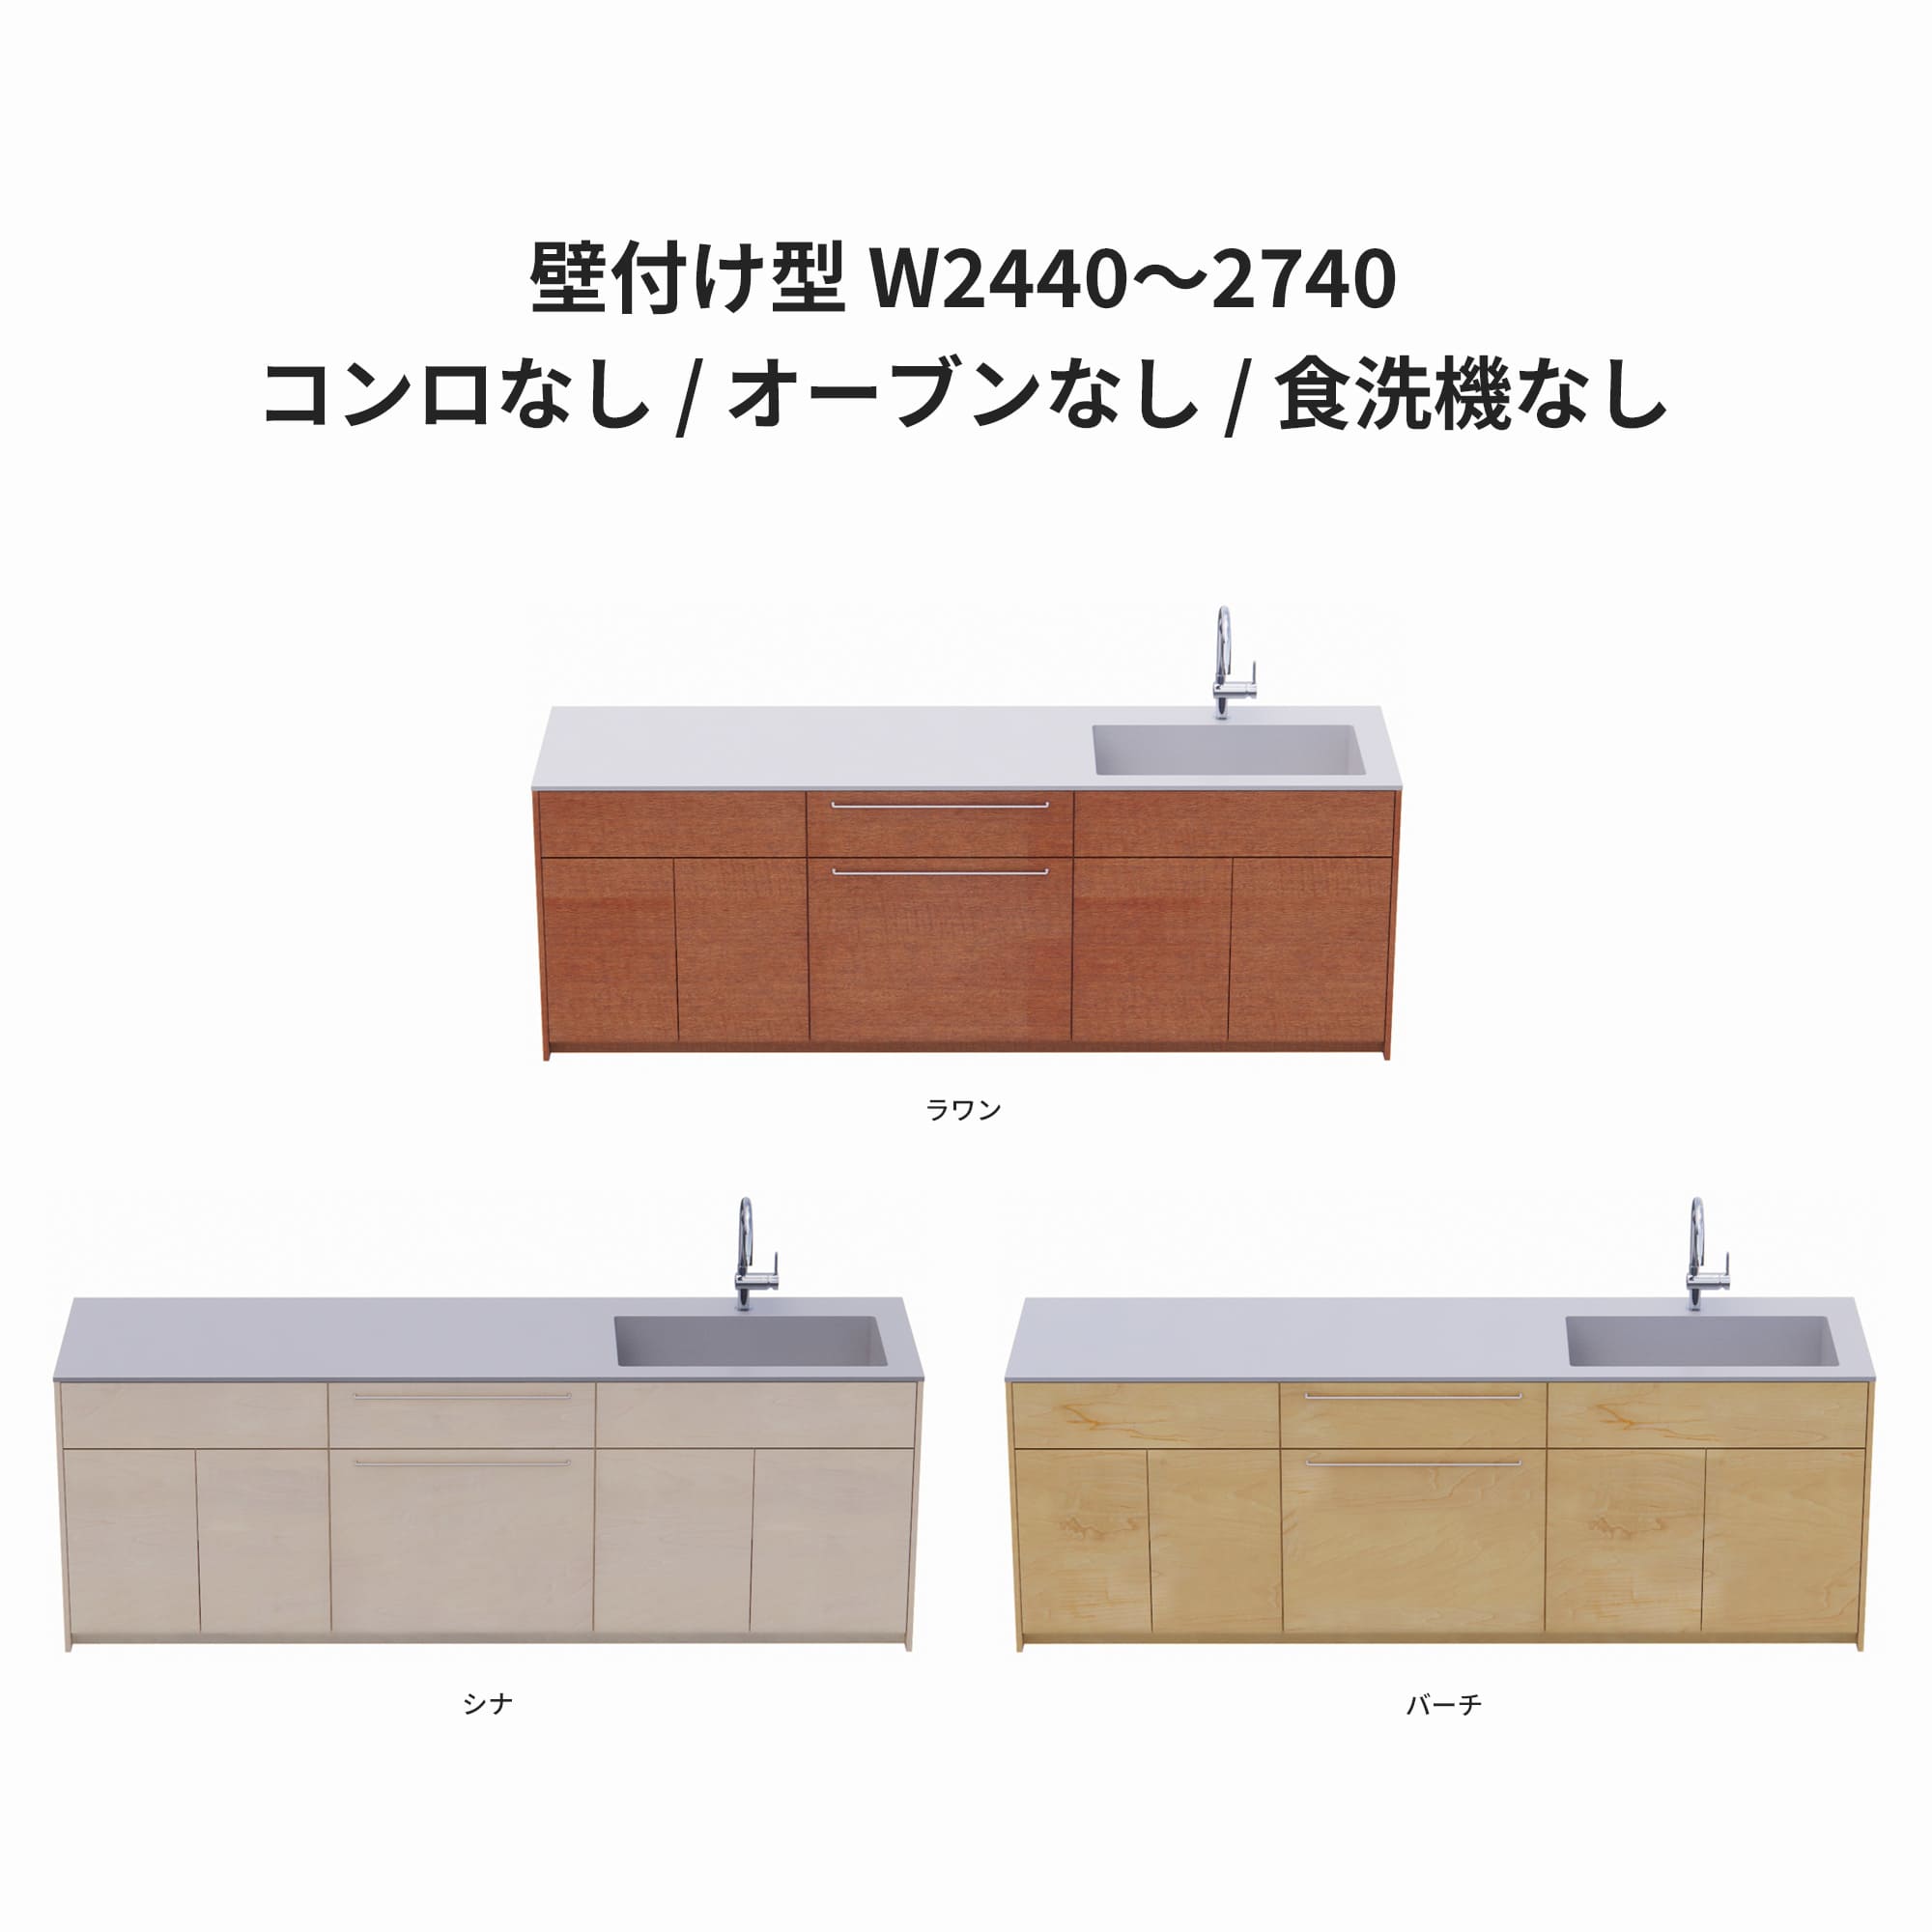 木製システムキッチン 壁付け型 W2440～2740・コンロなし / オーブンなし / 食洗機なし KB-KC022-24-G183 ラワン・シナ・バーチが選択できます